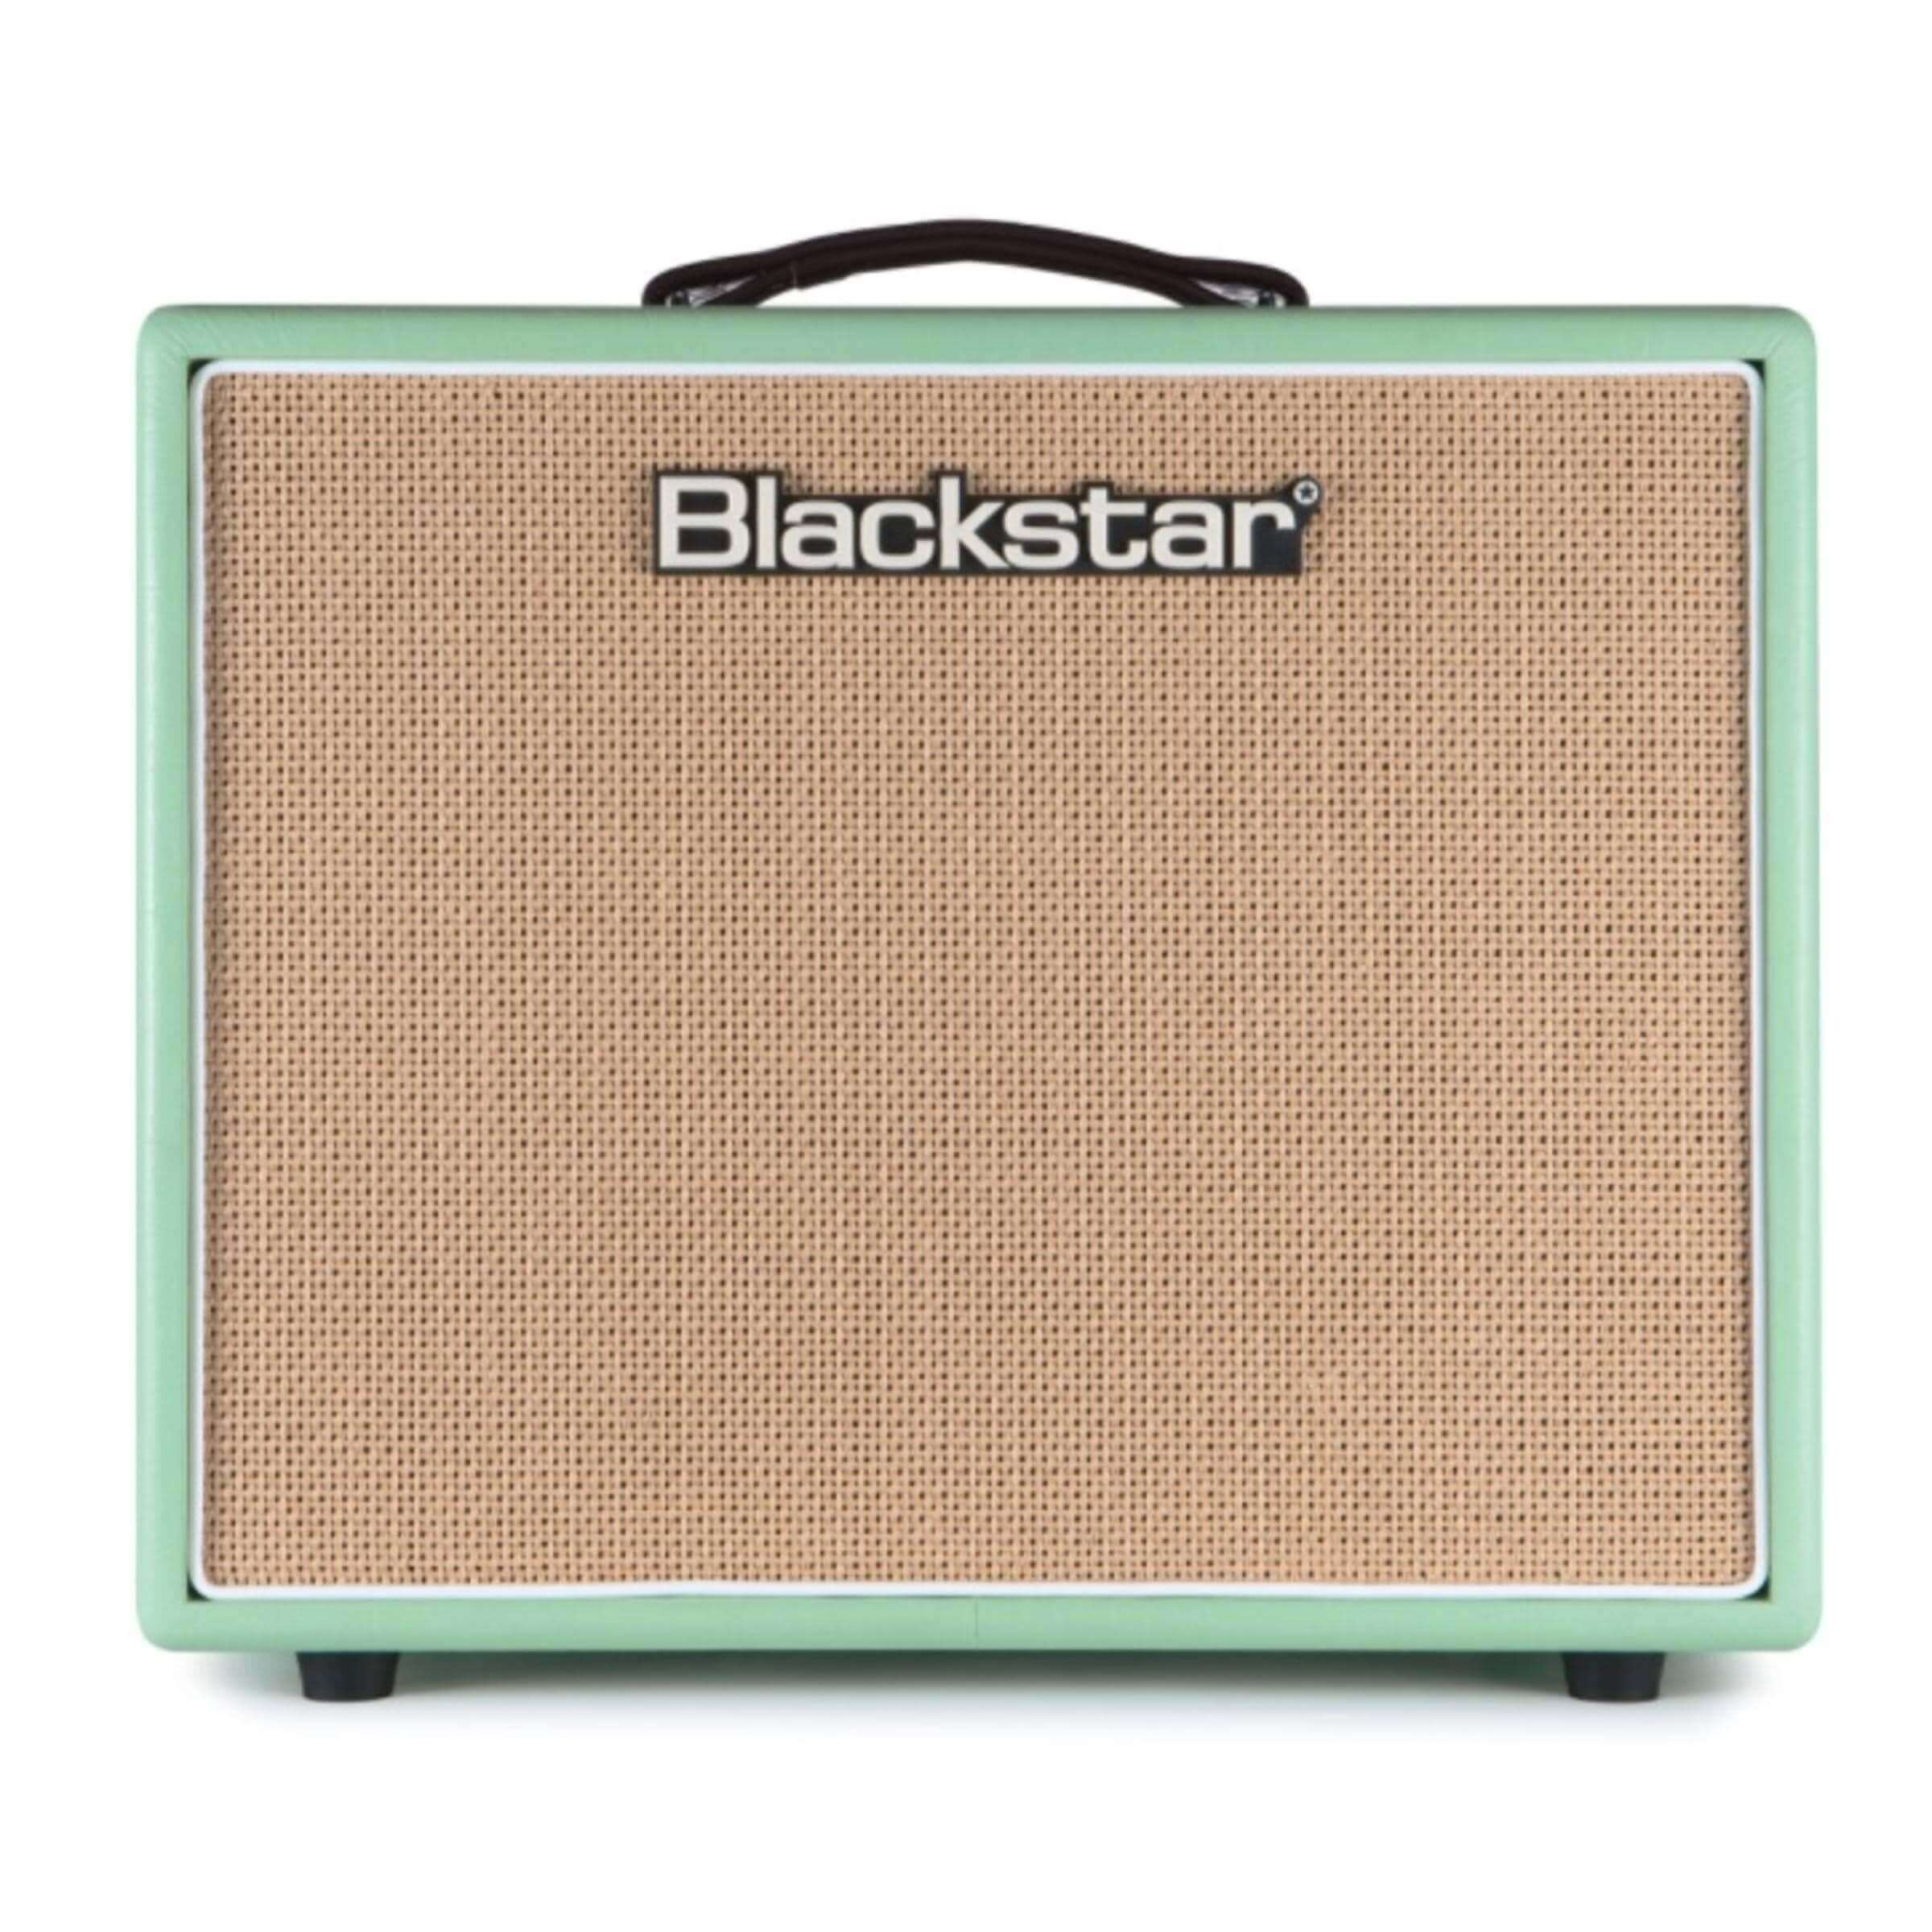 Blackstar Amplifier Copy of Blackstar HT-20R MkII Guitar Amp Combo (Surf Green)